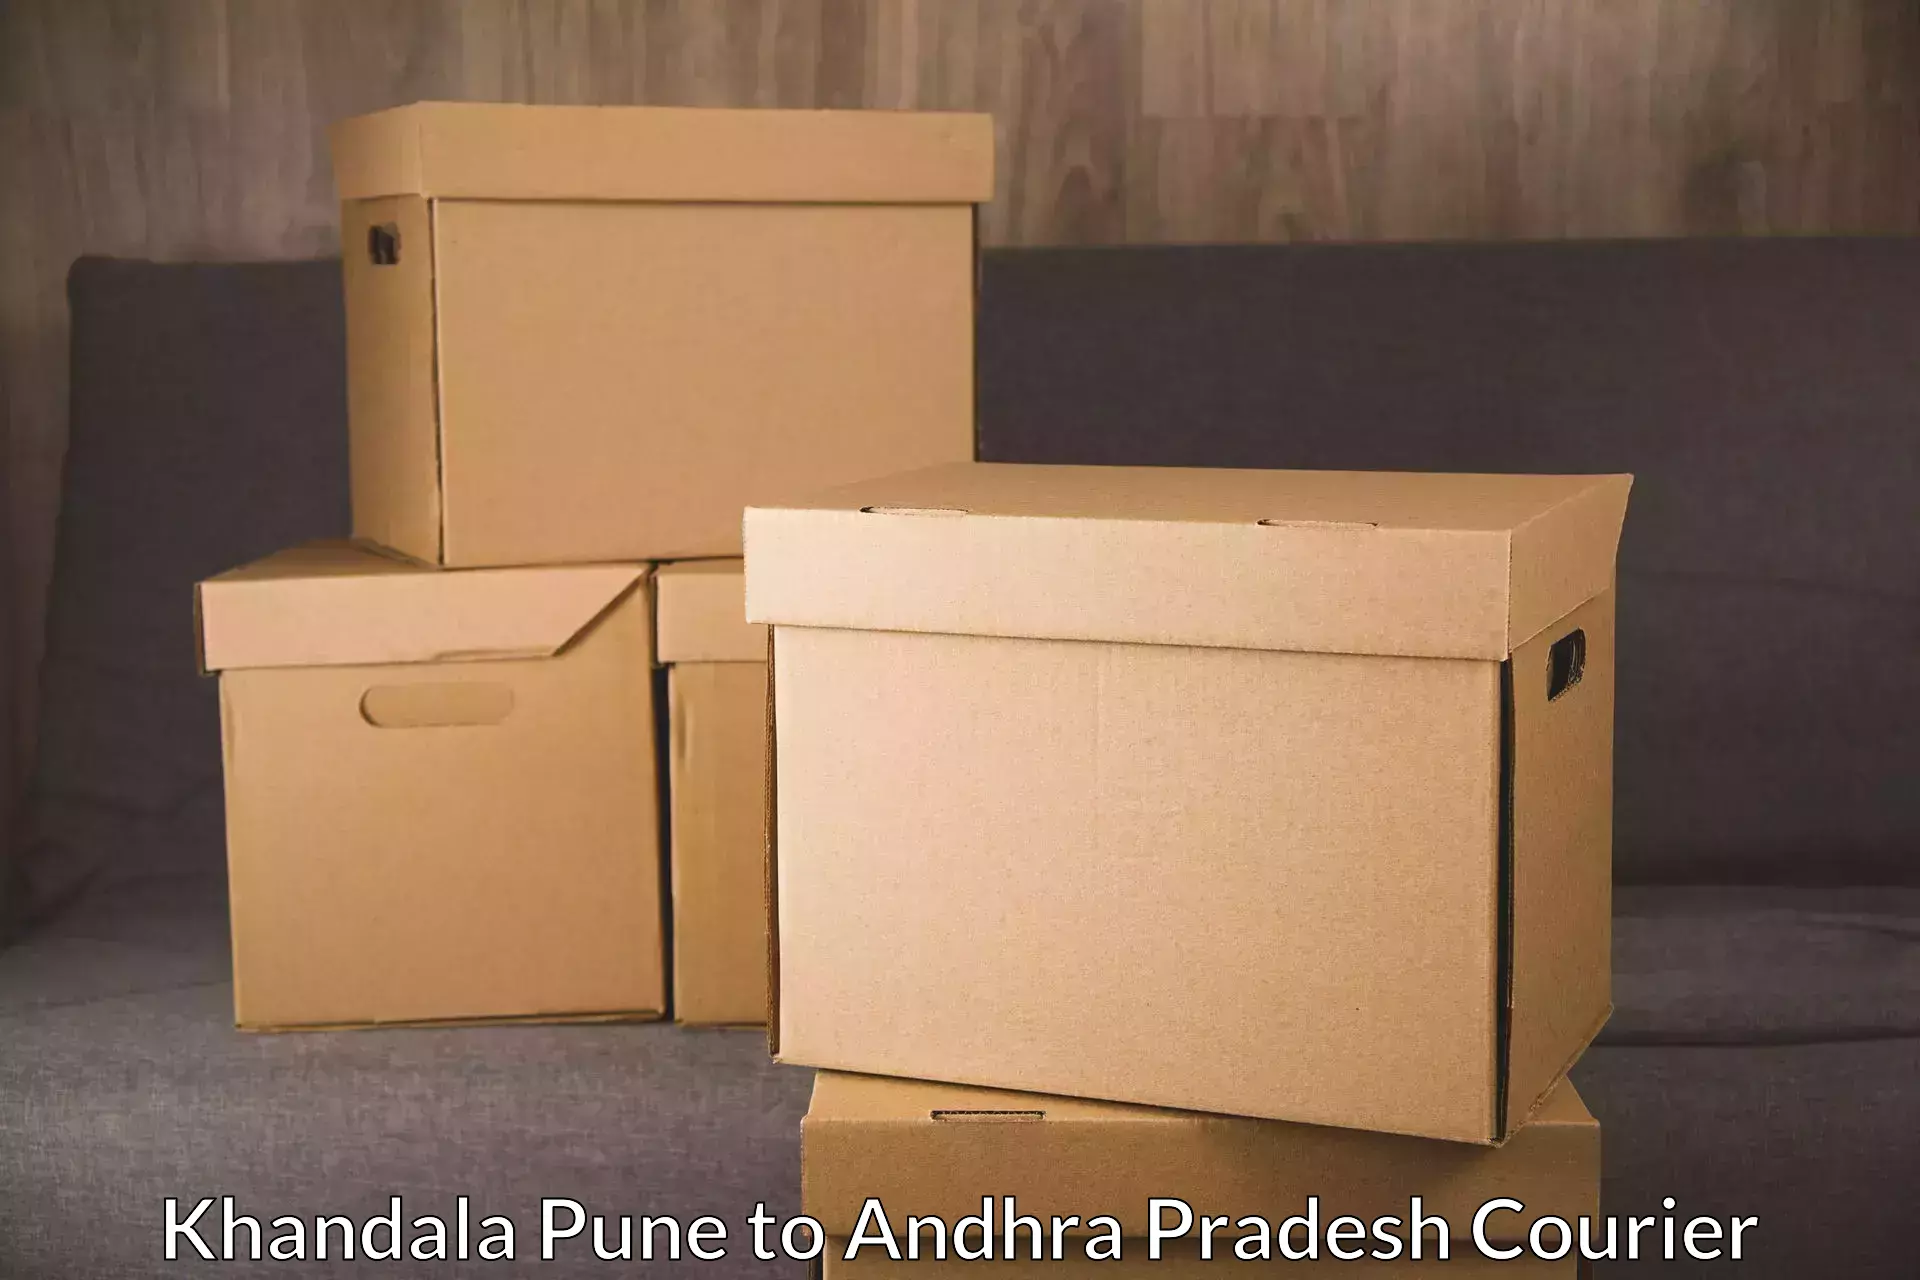 Express courier facilities Khandala Pune to Macherla